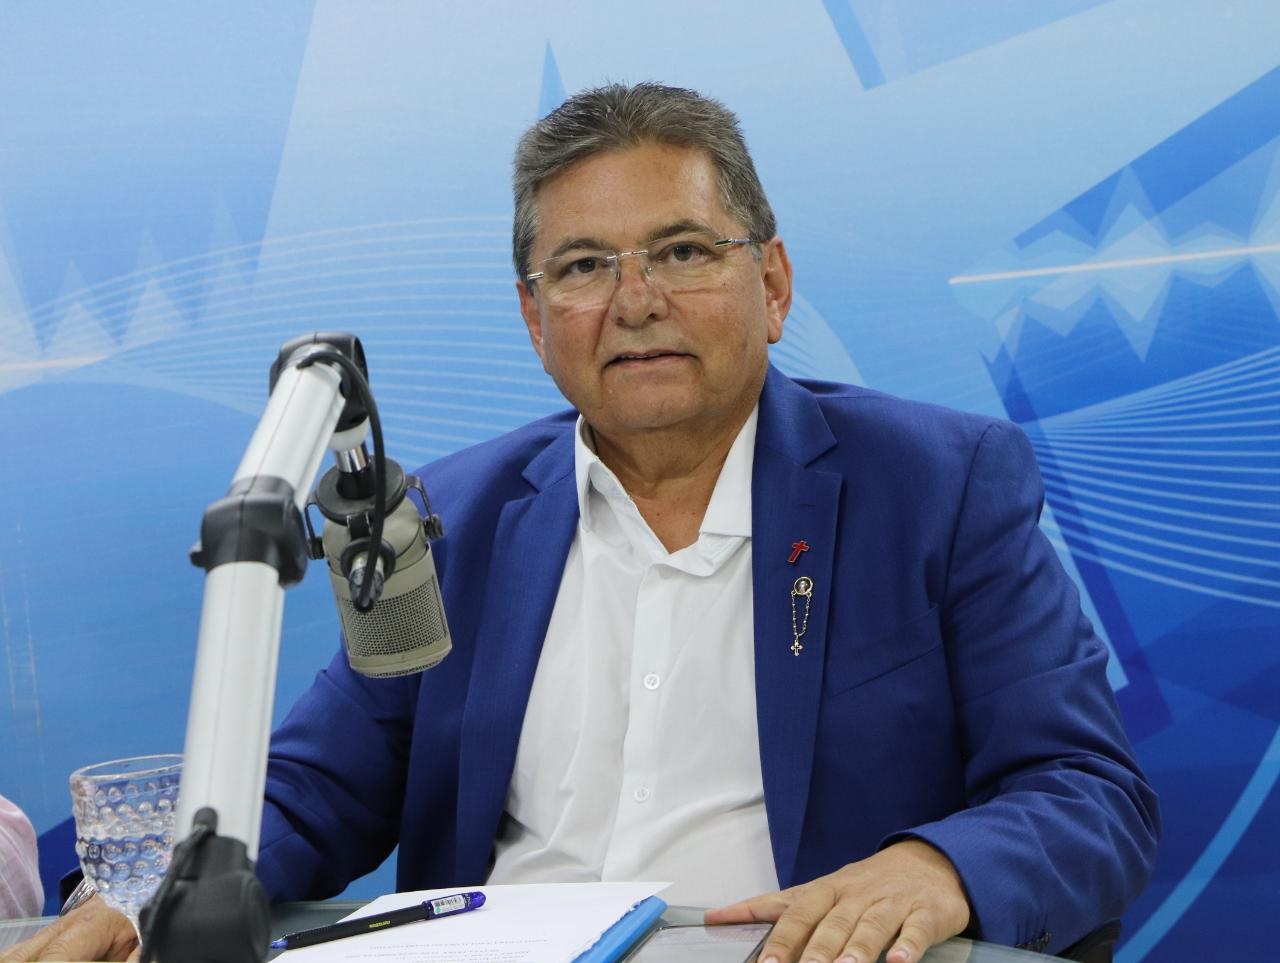 Adriano Galdino mantém posicionamento sobre desconfiança do grupo Ribeiro: “É minha opinião”